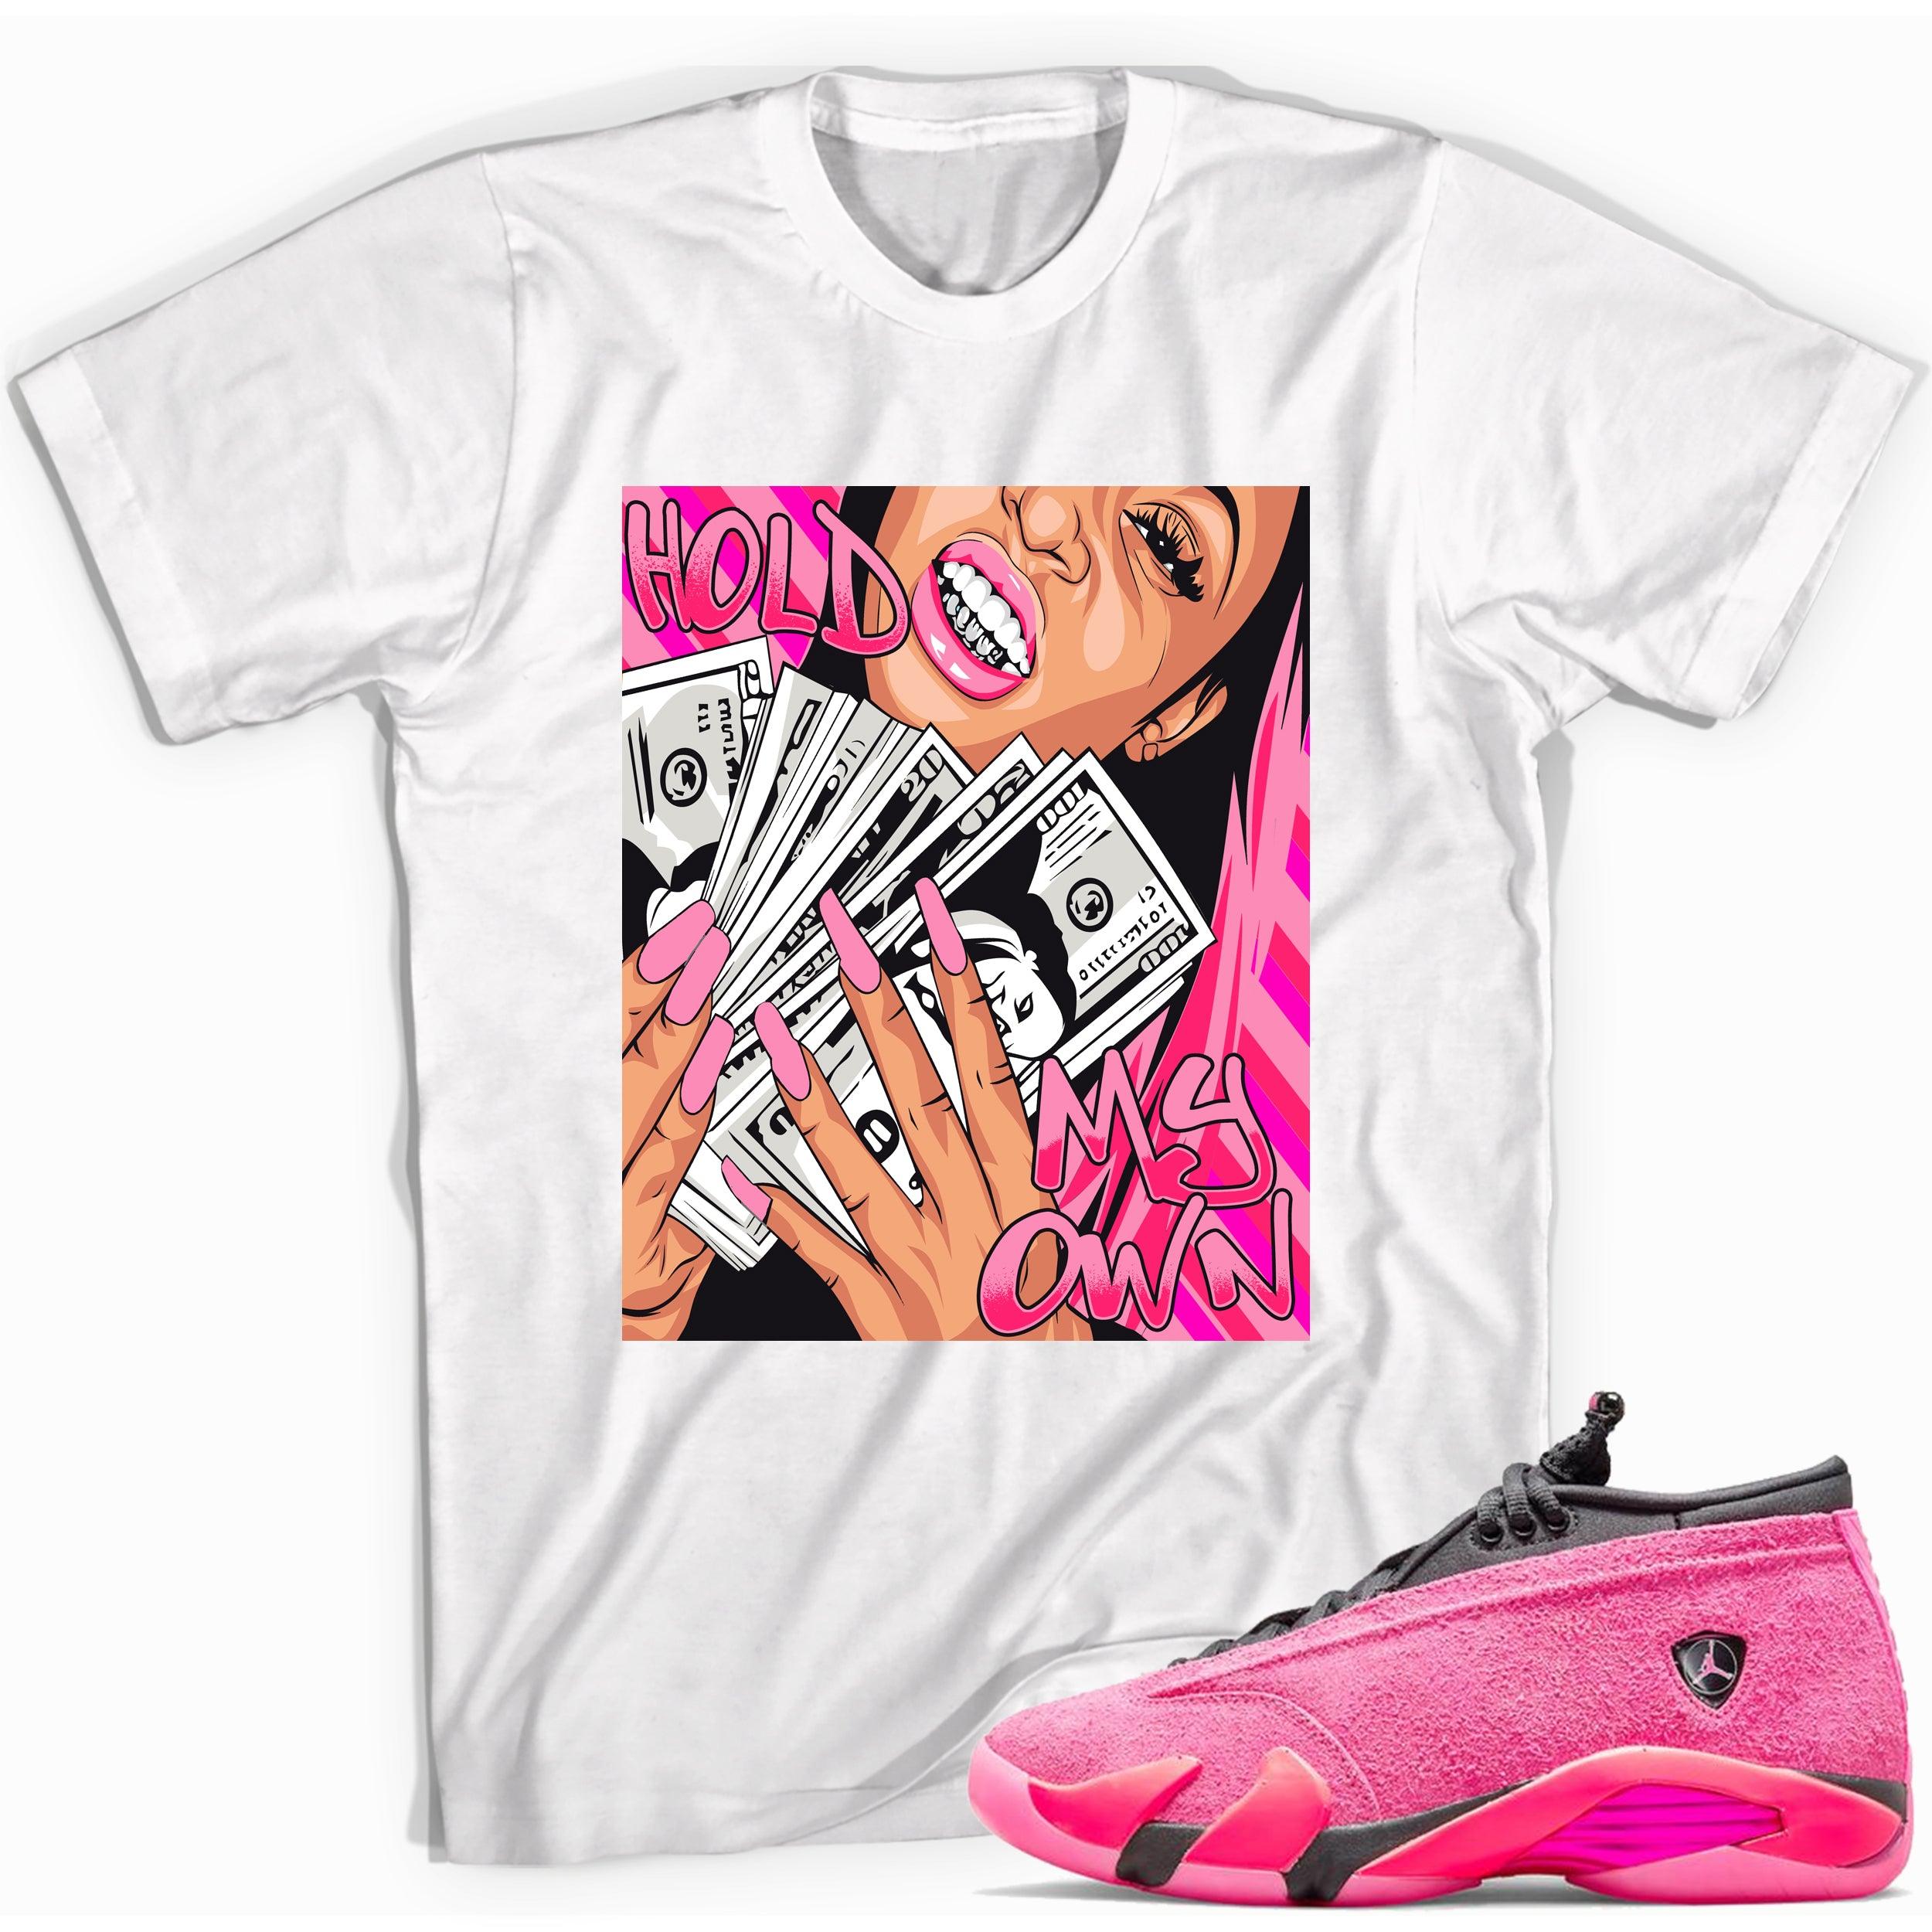 Hold My Own Shirt Jordan 14s Low Shocking Pink photo